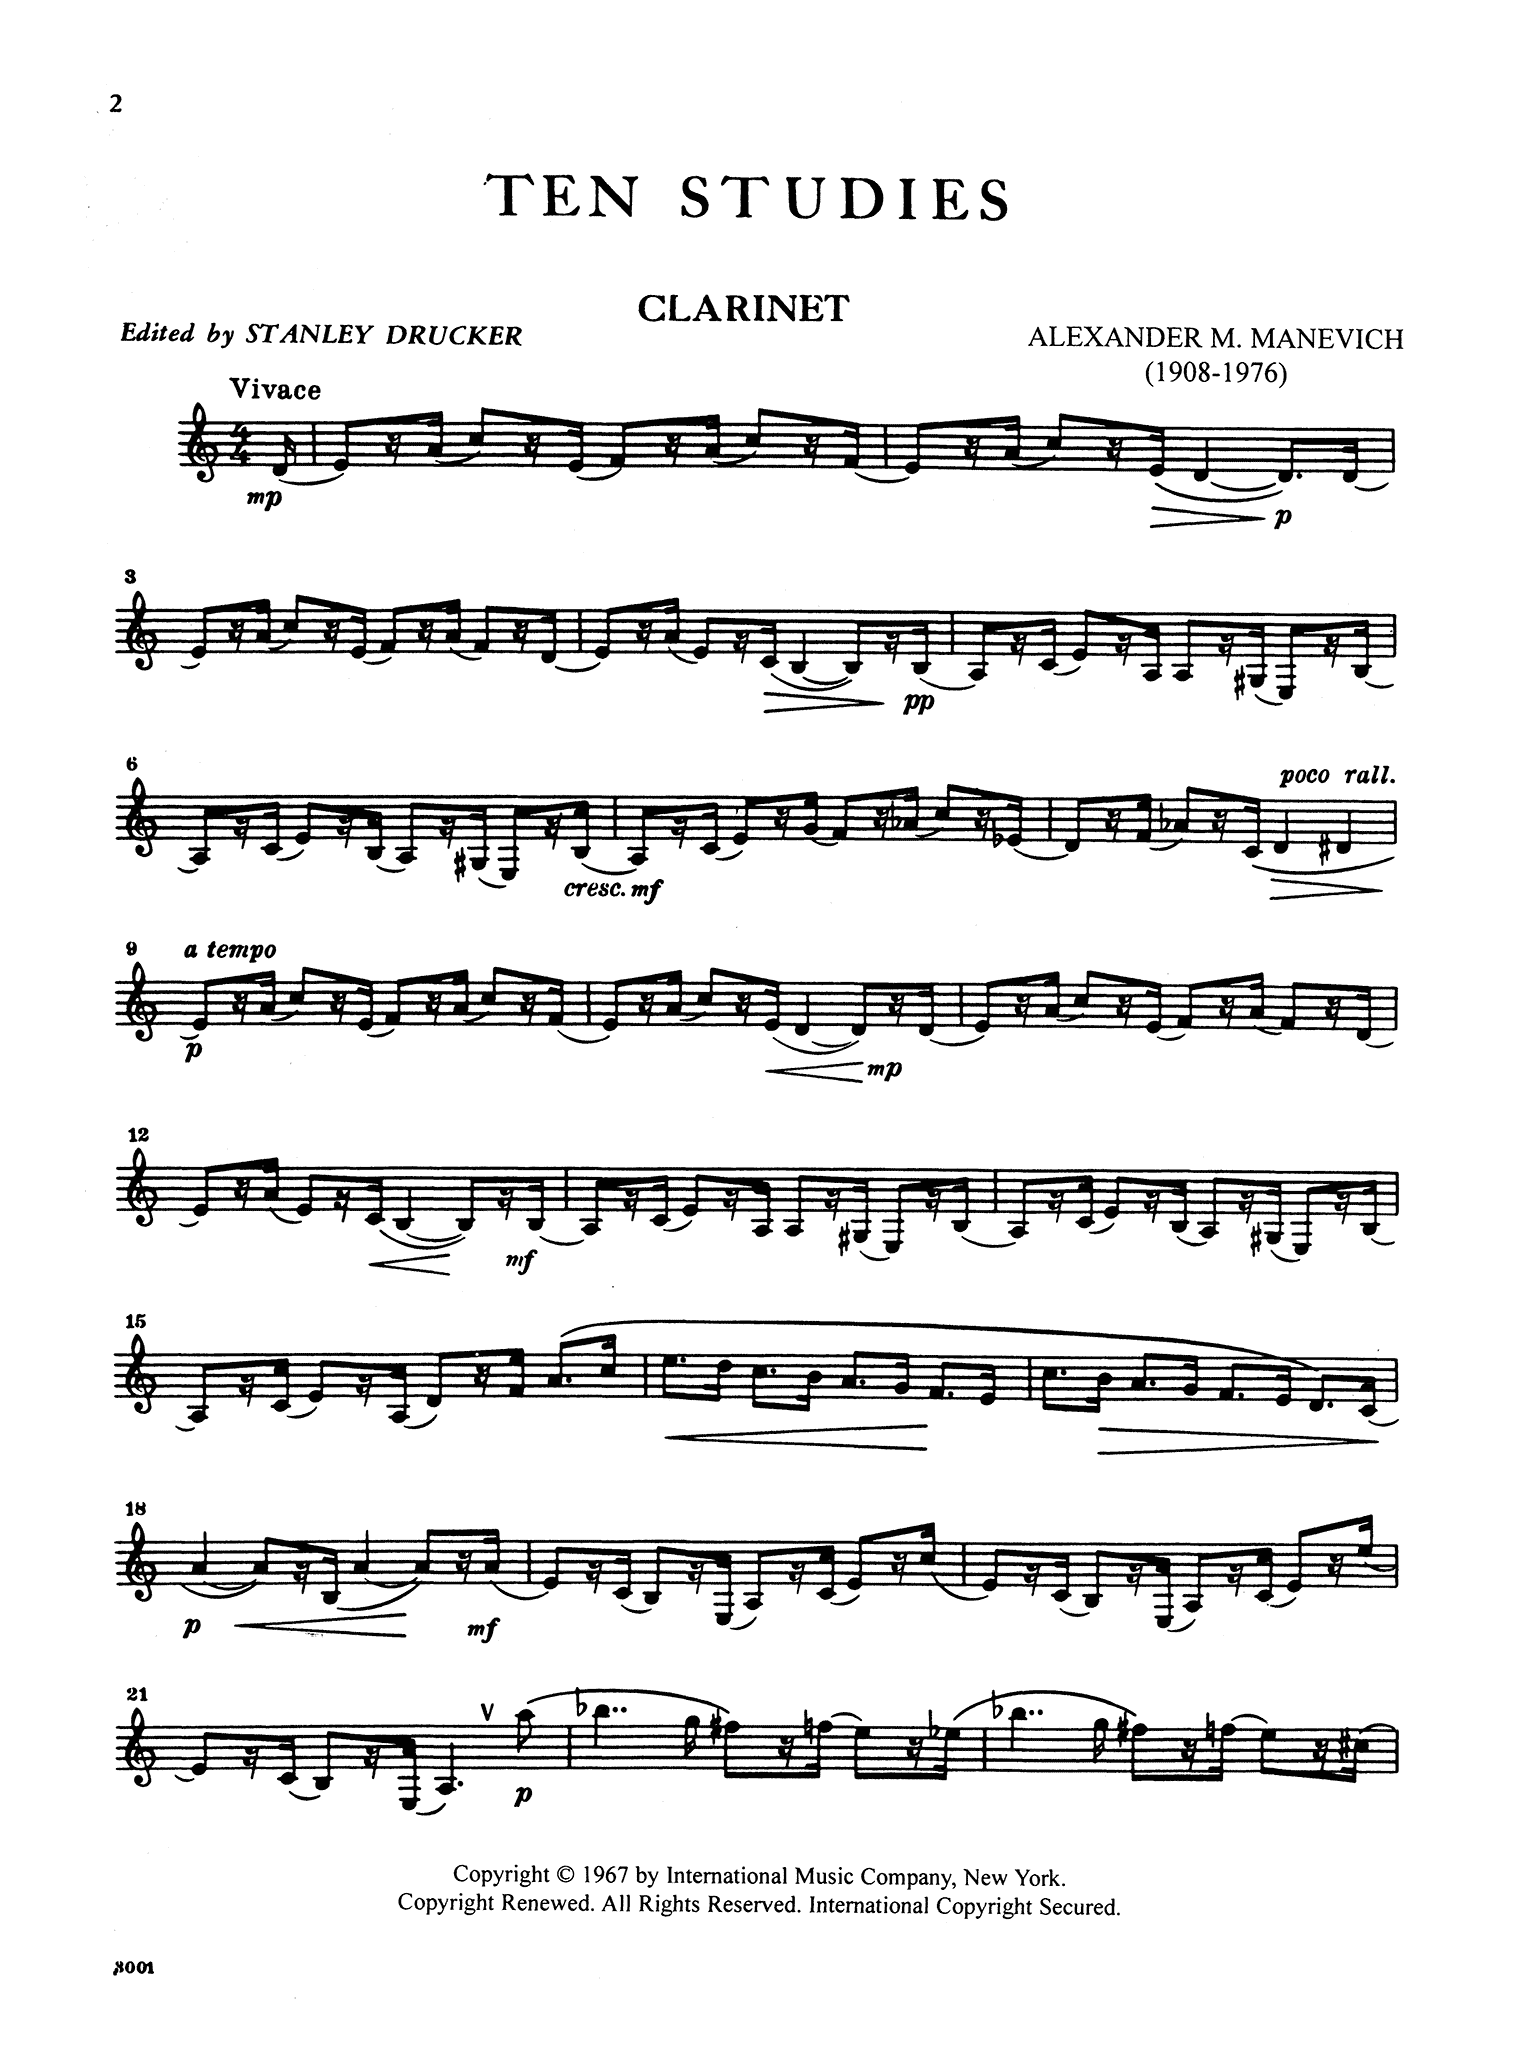 Manevich, Alexander: 10 Studies for clarinet no. 1